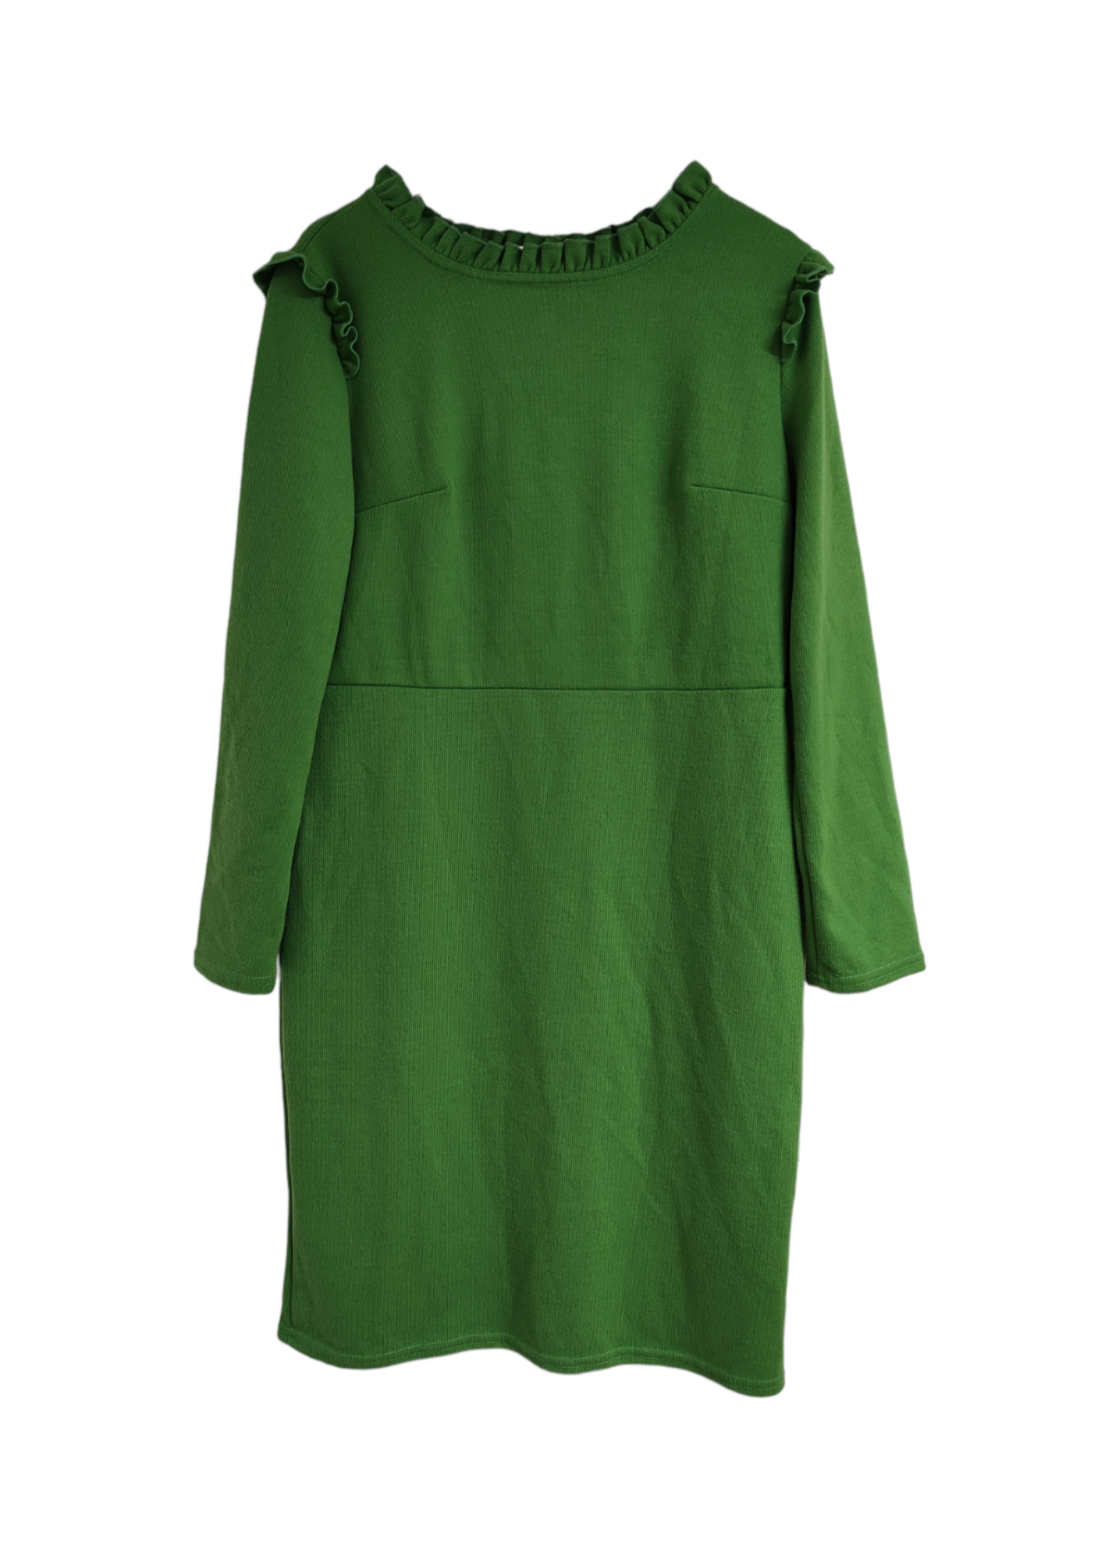 Πλεκτό Φόρεμα COLLECTION LONDON σε Λαχανί Χρώμα (Large)